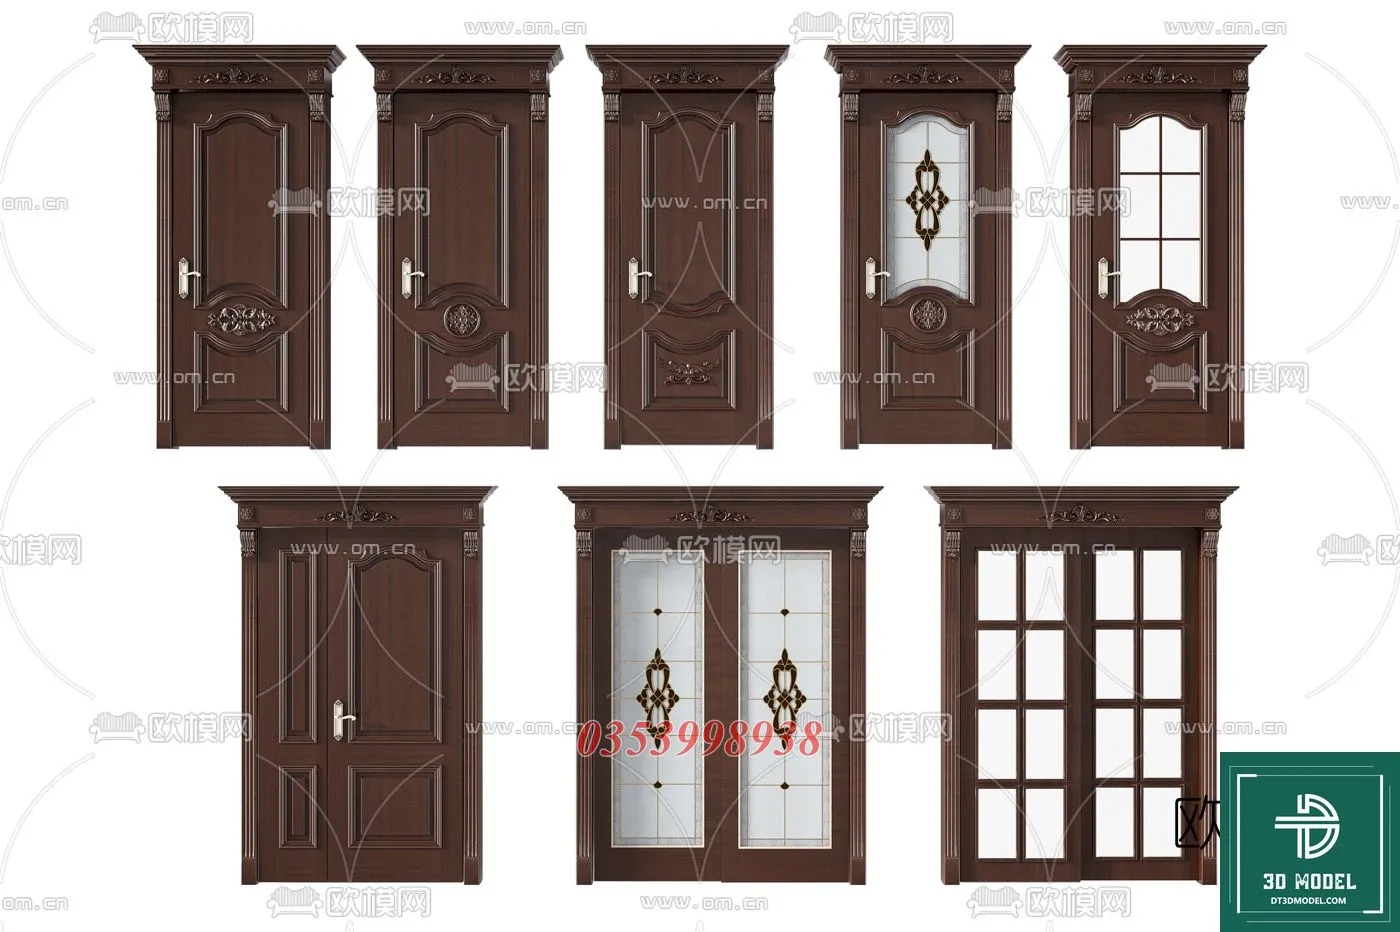 CLASSIC DOOR – 3dsmax MODELS – 045